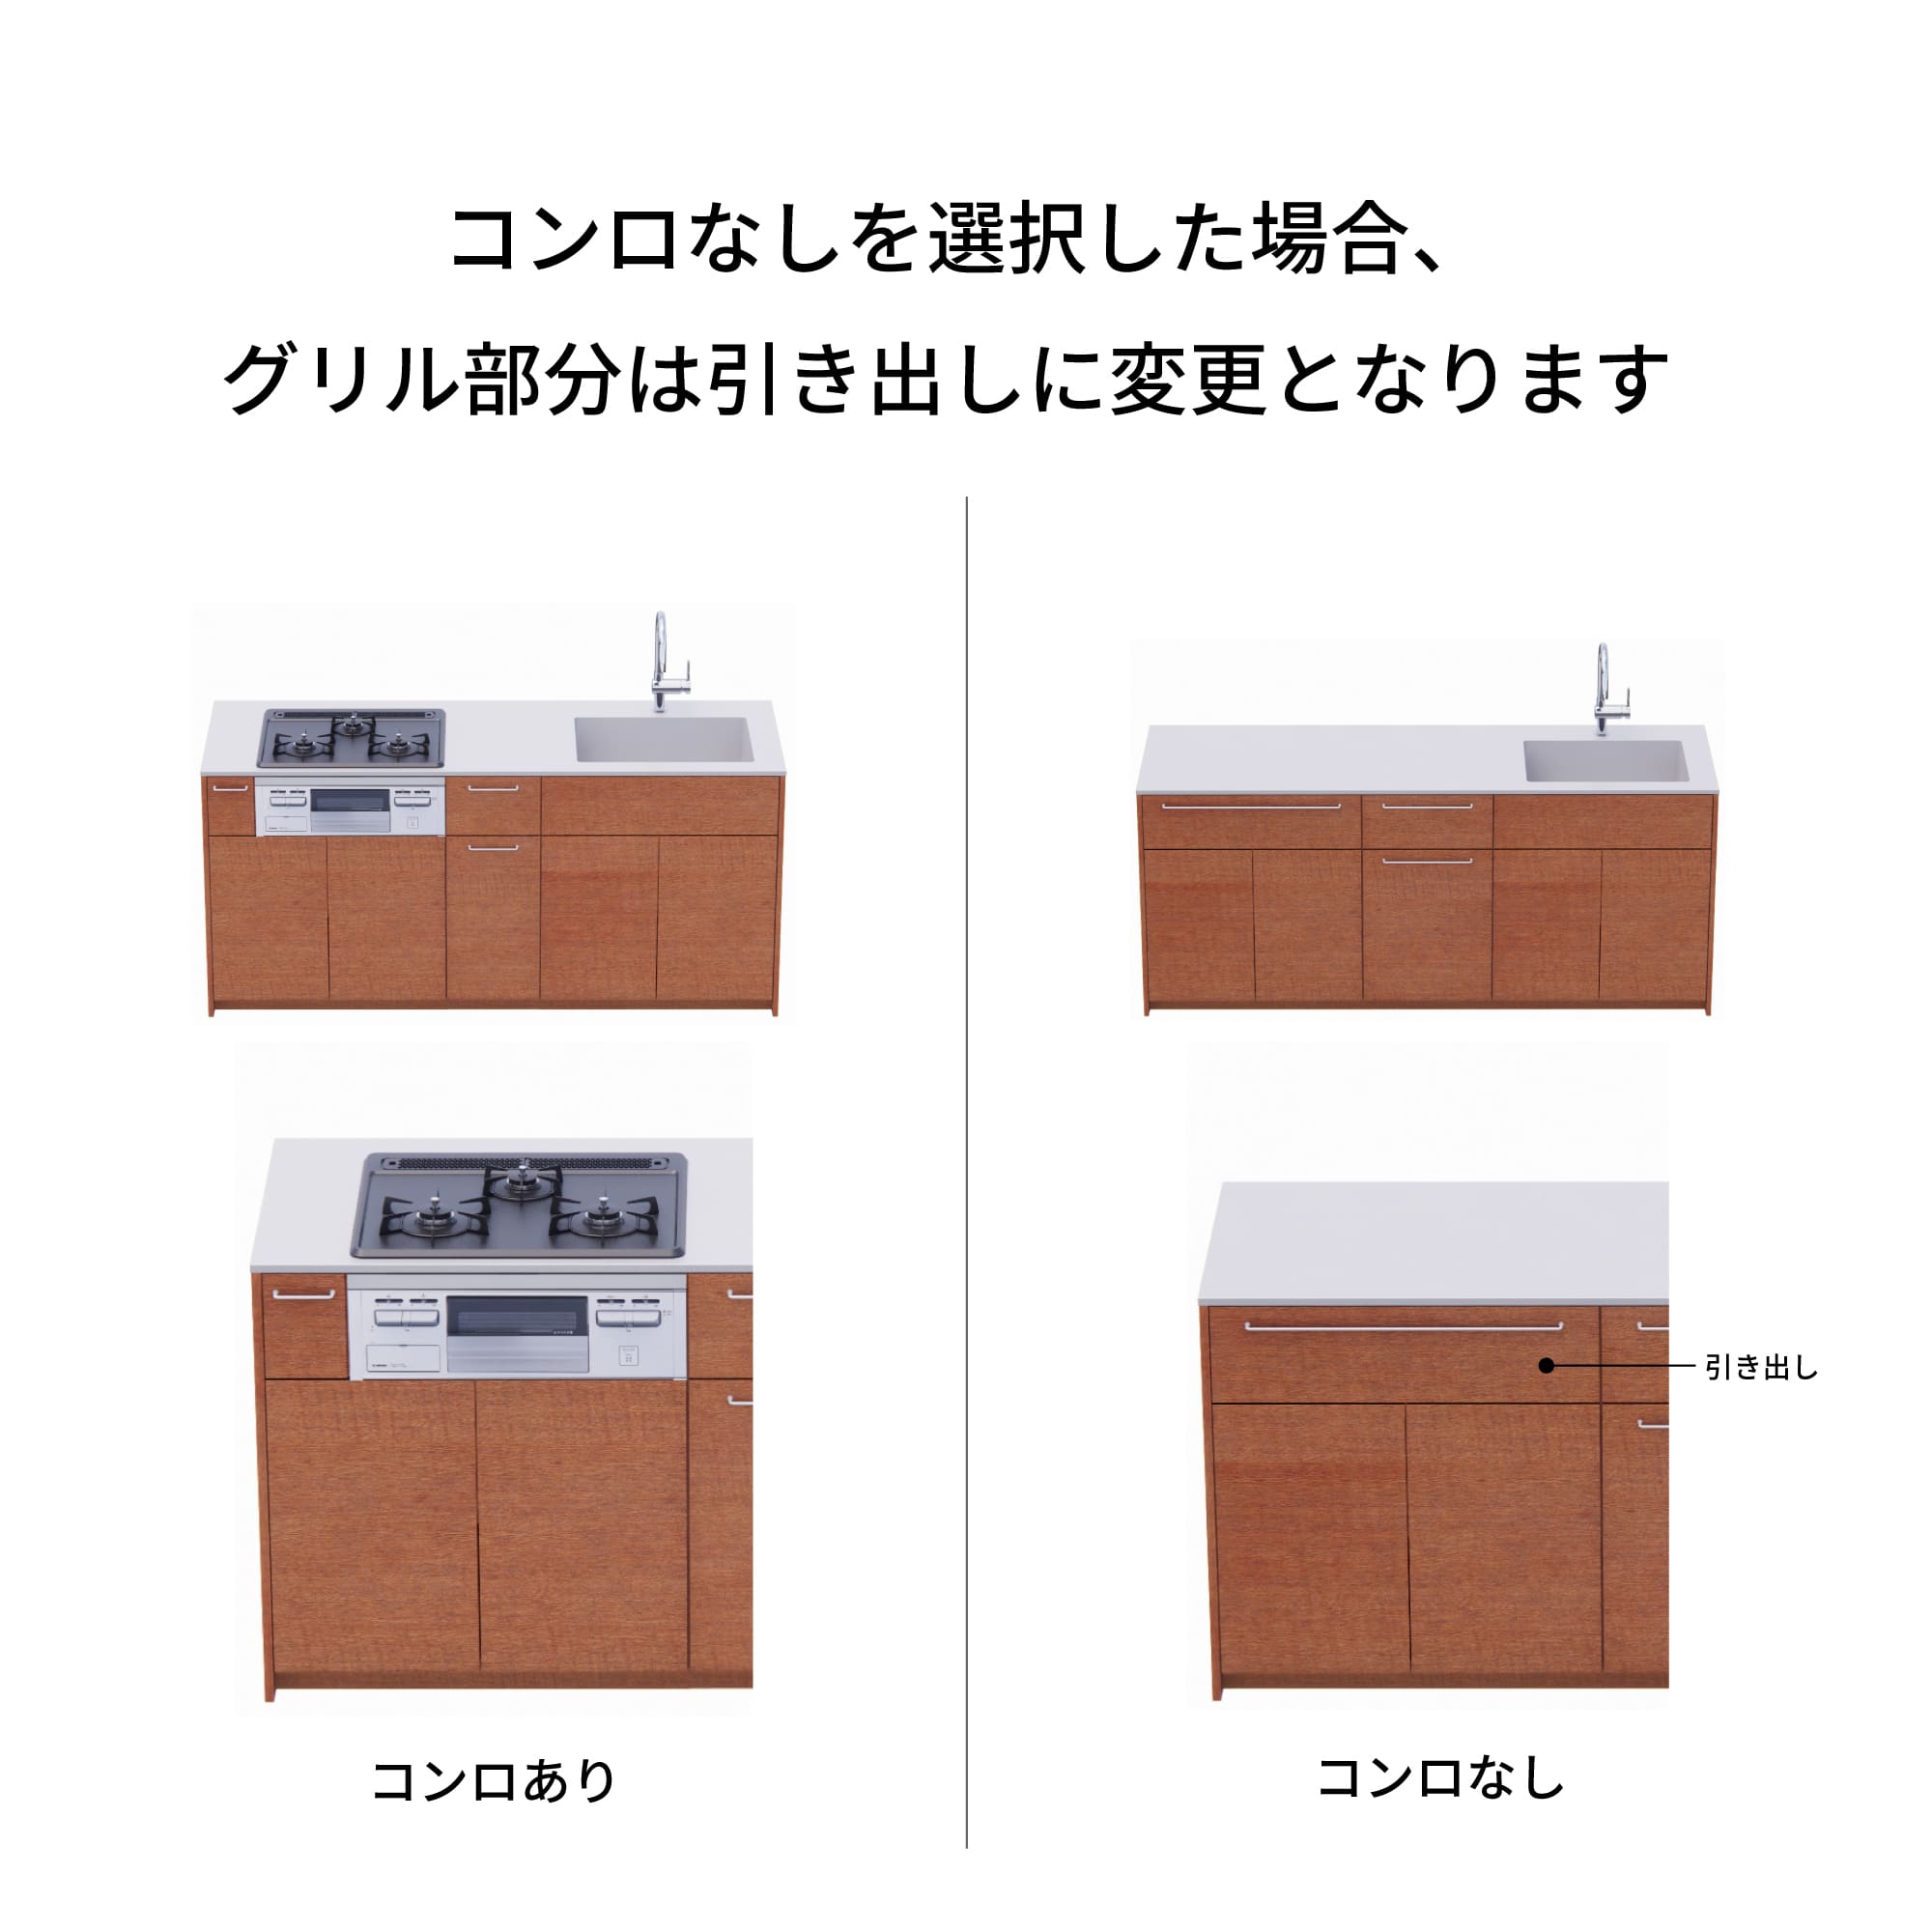 木製システムキッチン 対面型 W2140～2290・コンロなし / オーブンなし / 食洗機あり KB-KC022-39-G183 コンロ無しの場合、通常魚焼きグリルがある部分は引き出しになっています